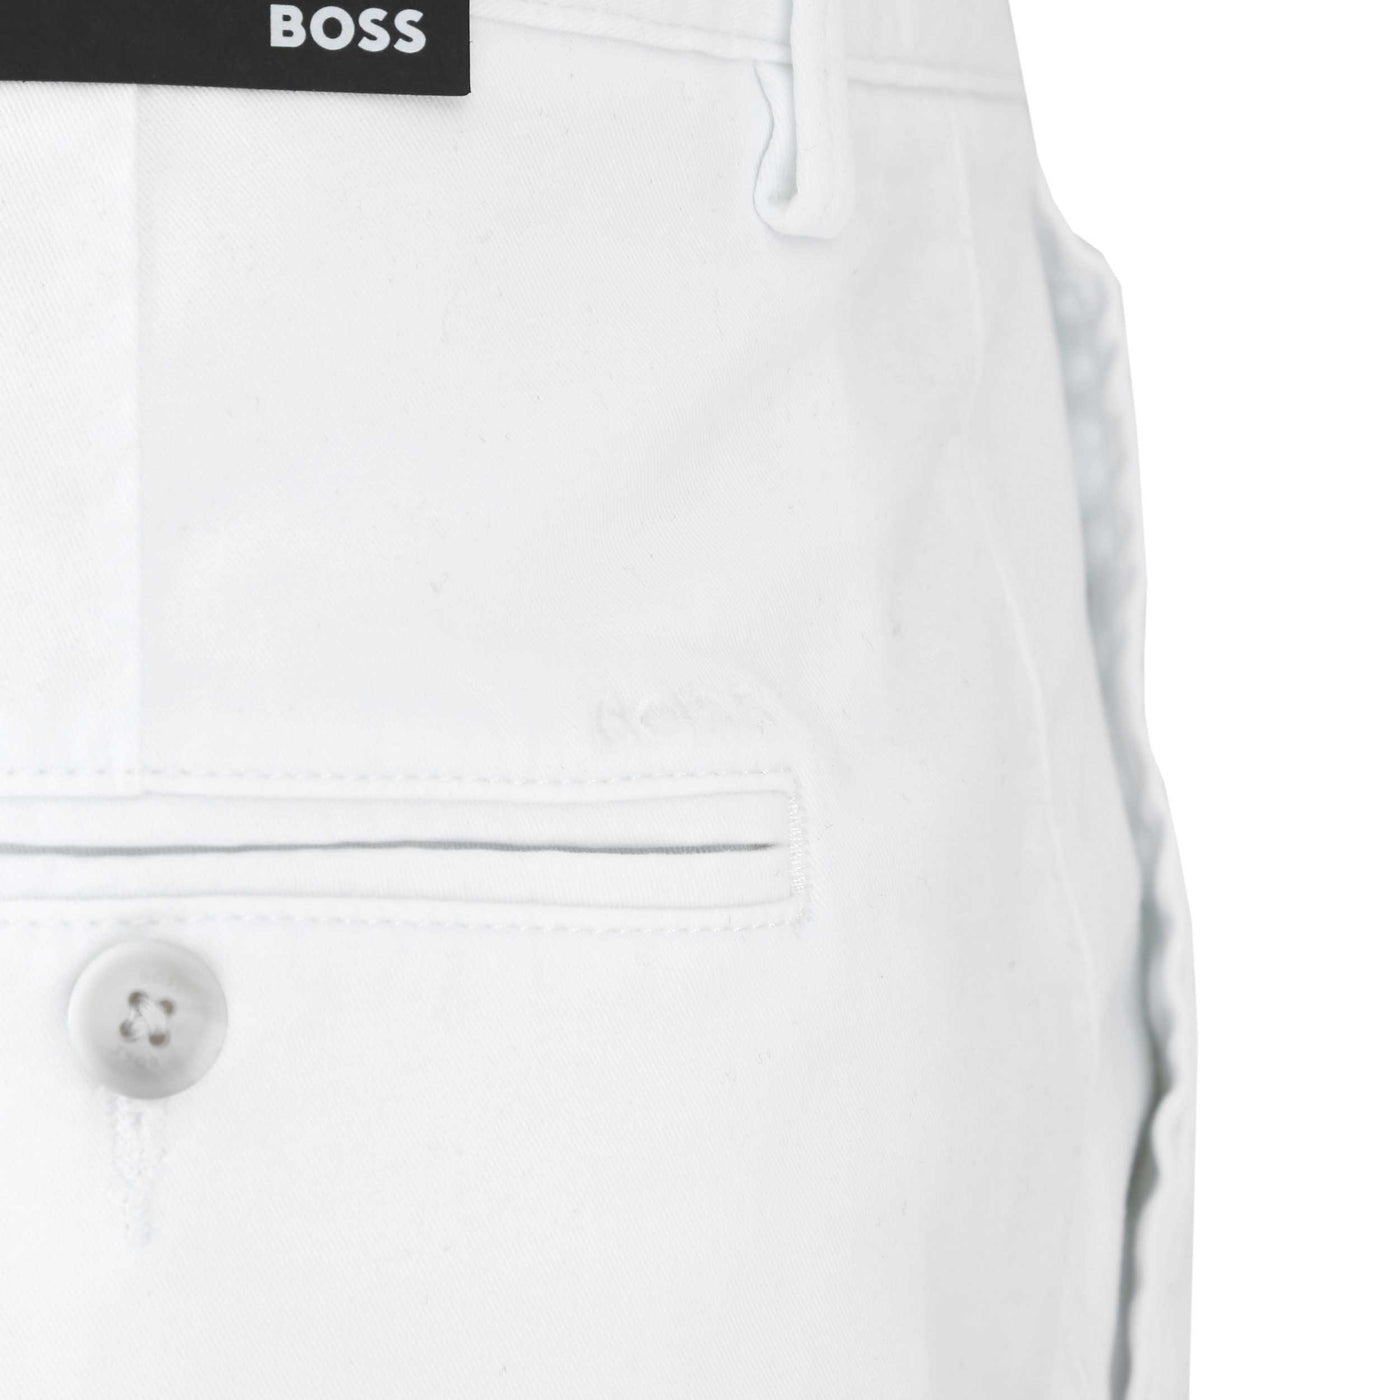 BOSS Slice Short Short in White Pocket